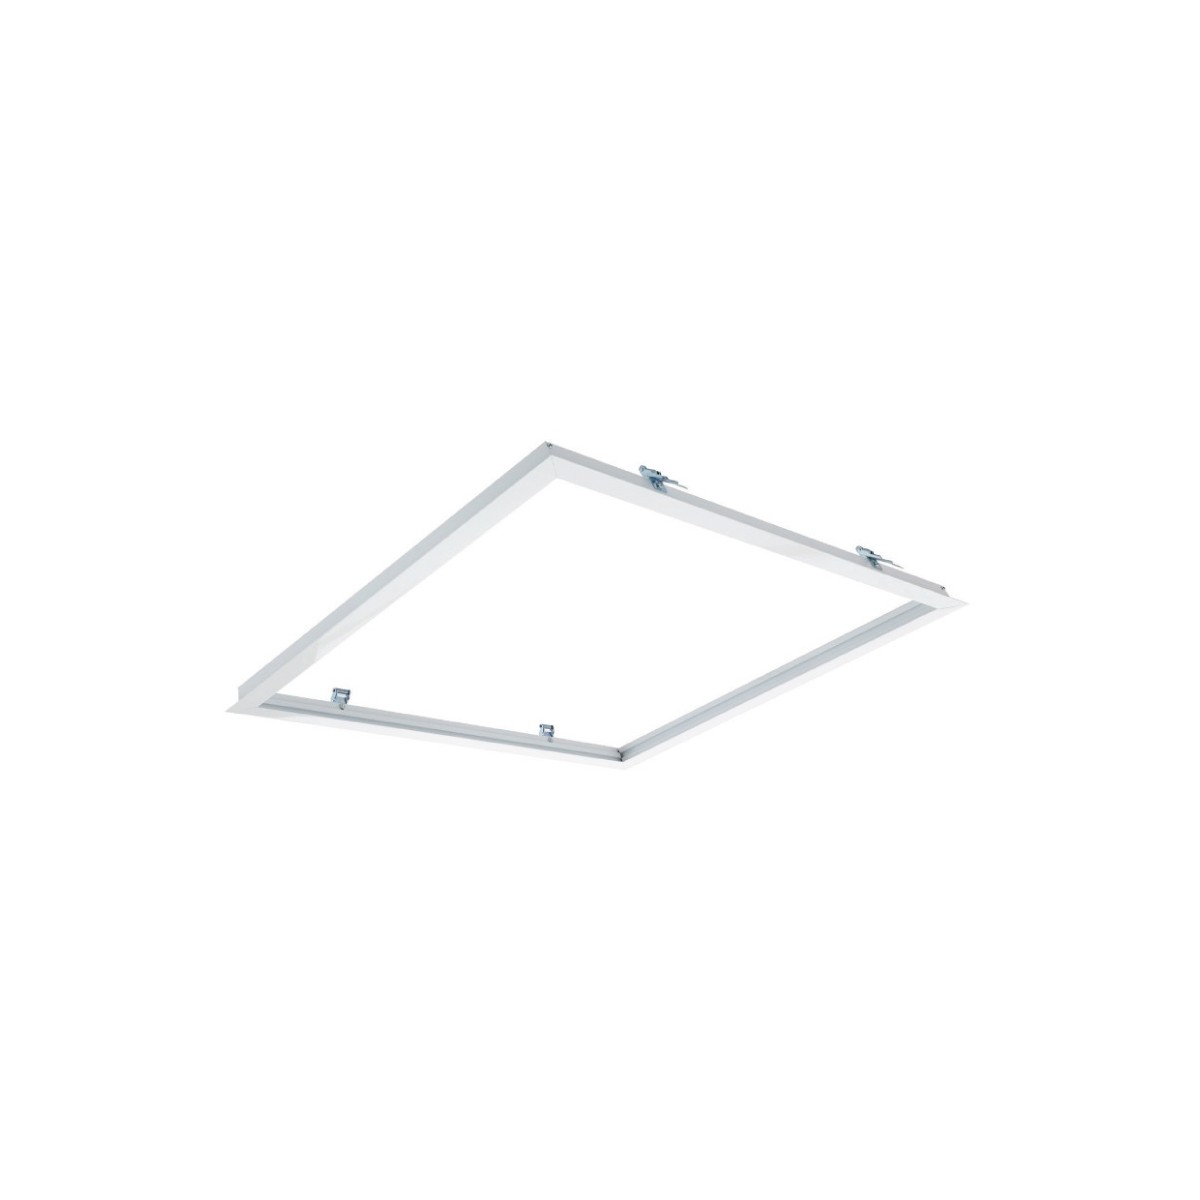 Einbaurahmen-Kit für 60x60 LED-Panels